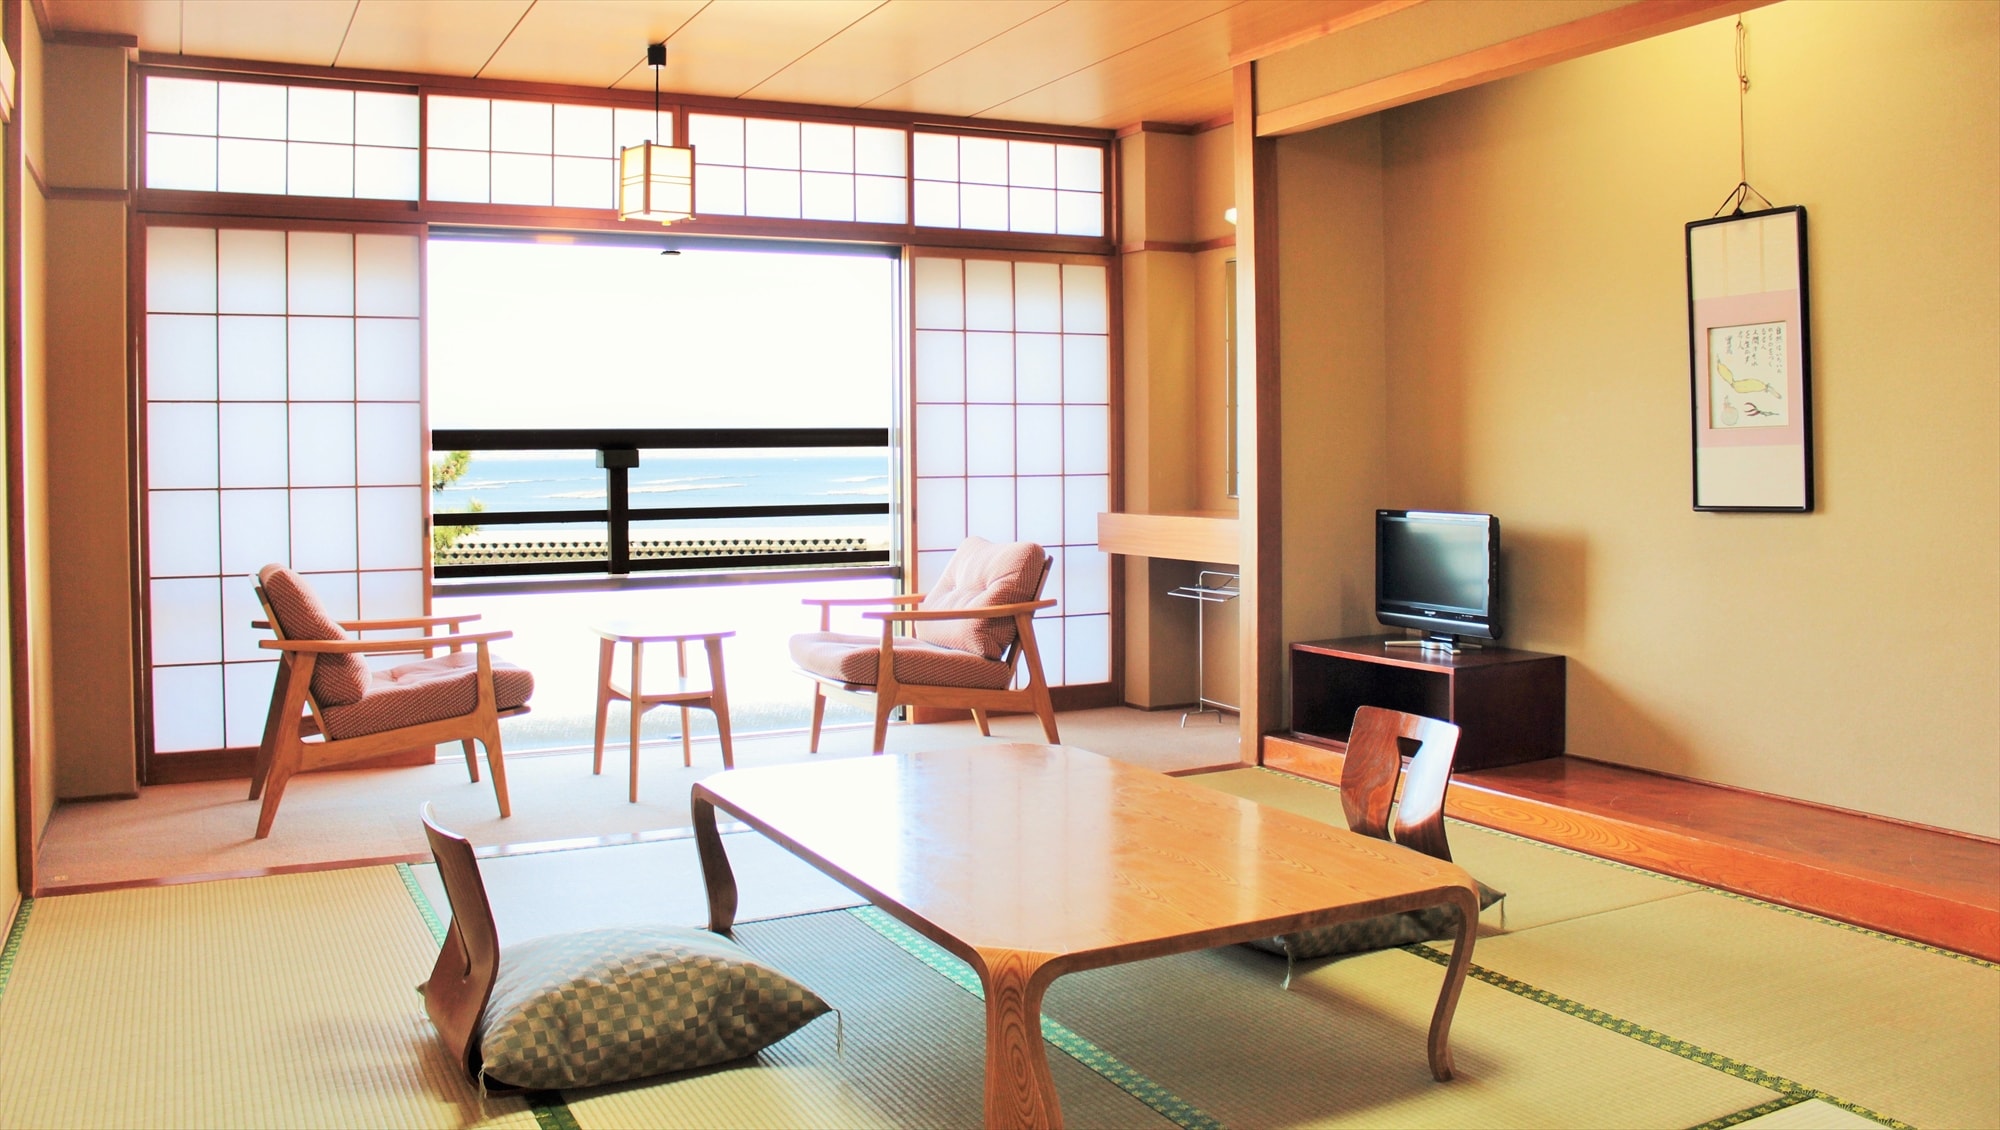 眺望瀨戶內海廣島夜景的海景日式房間【禁煙】36平方米的日式房間，10張榻榻米+寬邊，浴室和衛生間